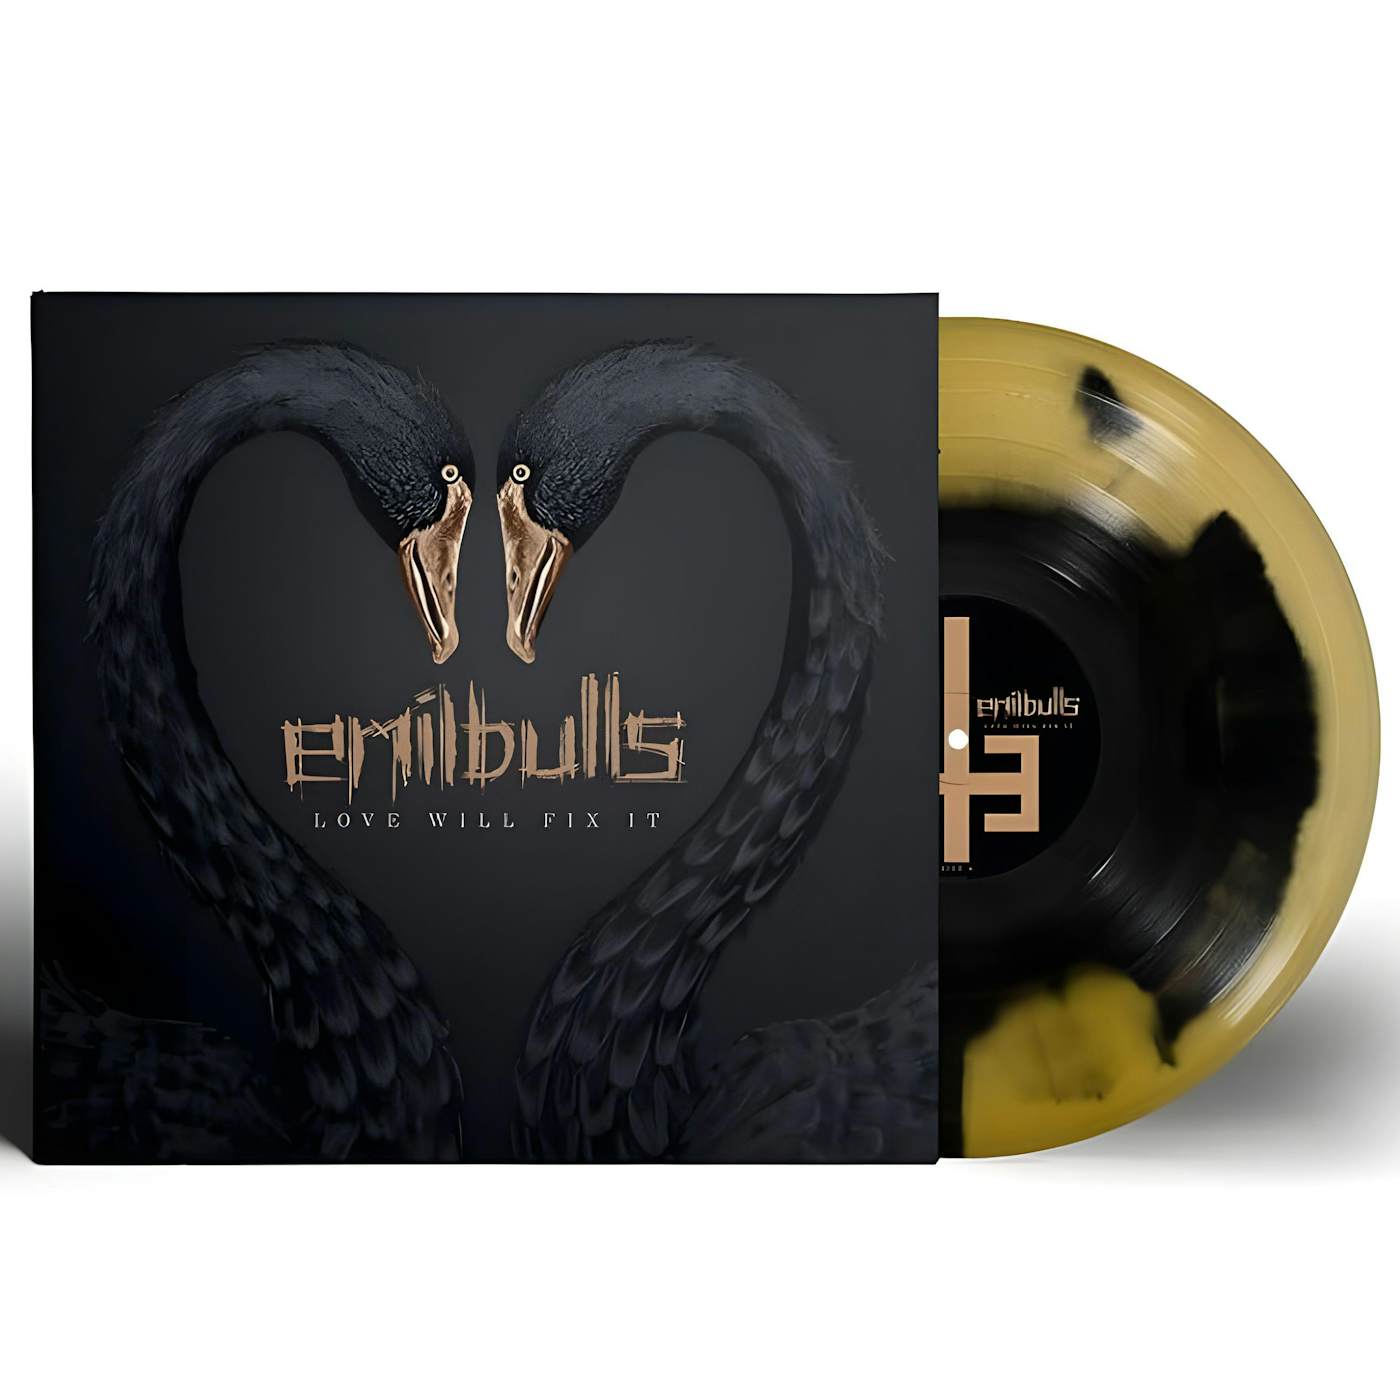 Emil Bulls Love Will Fix It - Gold & Black Inkspot Vinyl Record